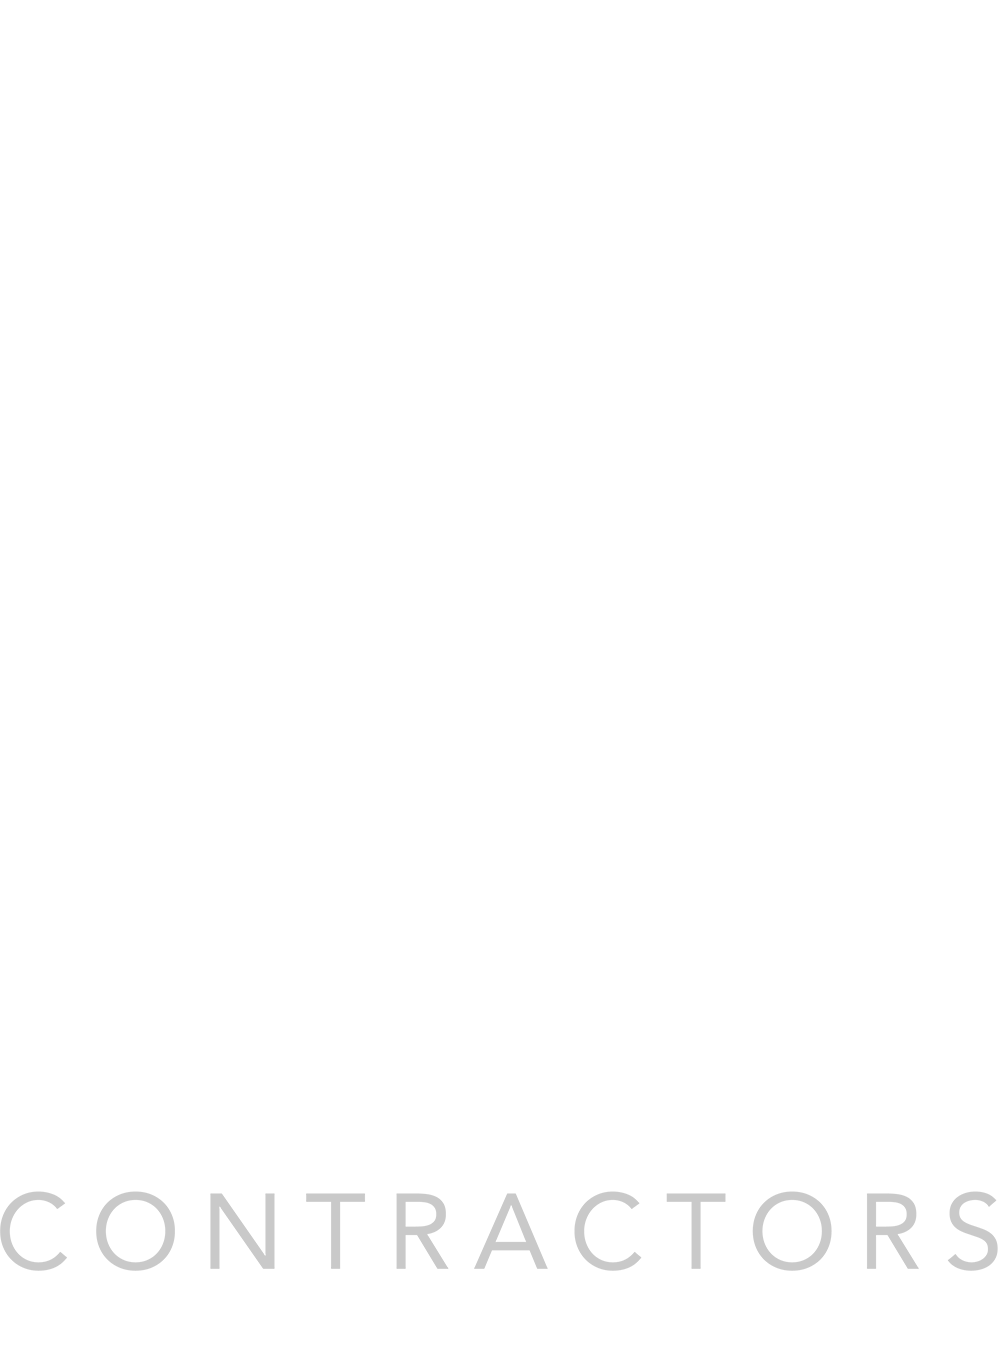 Mayfair One Contractors